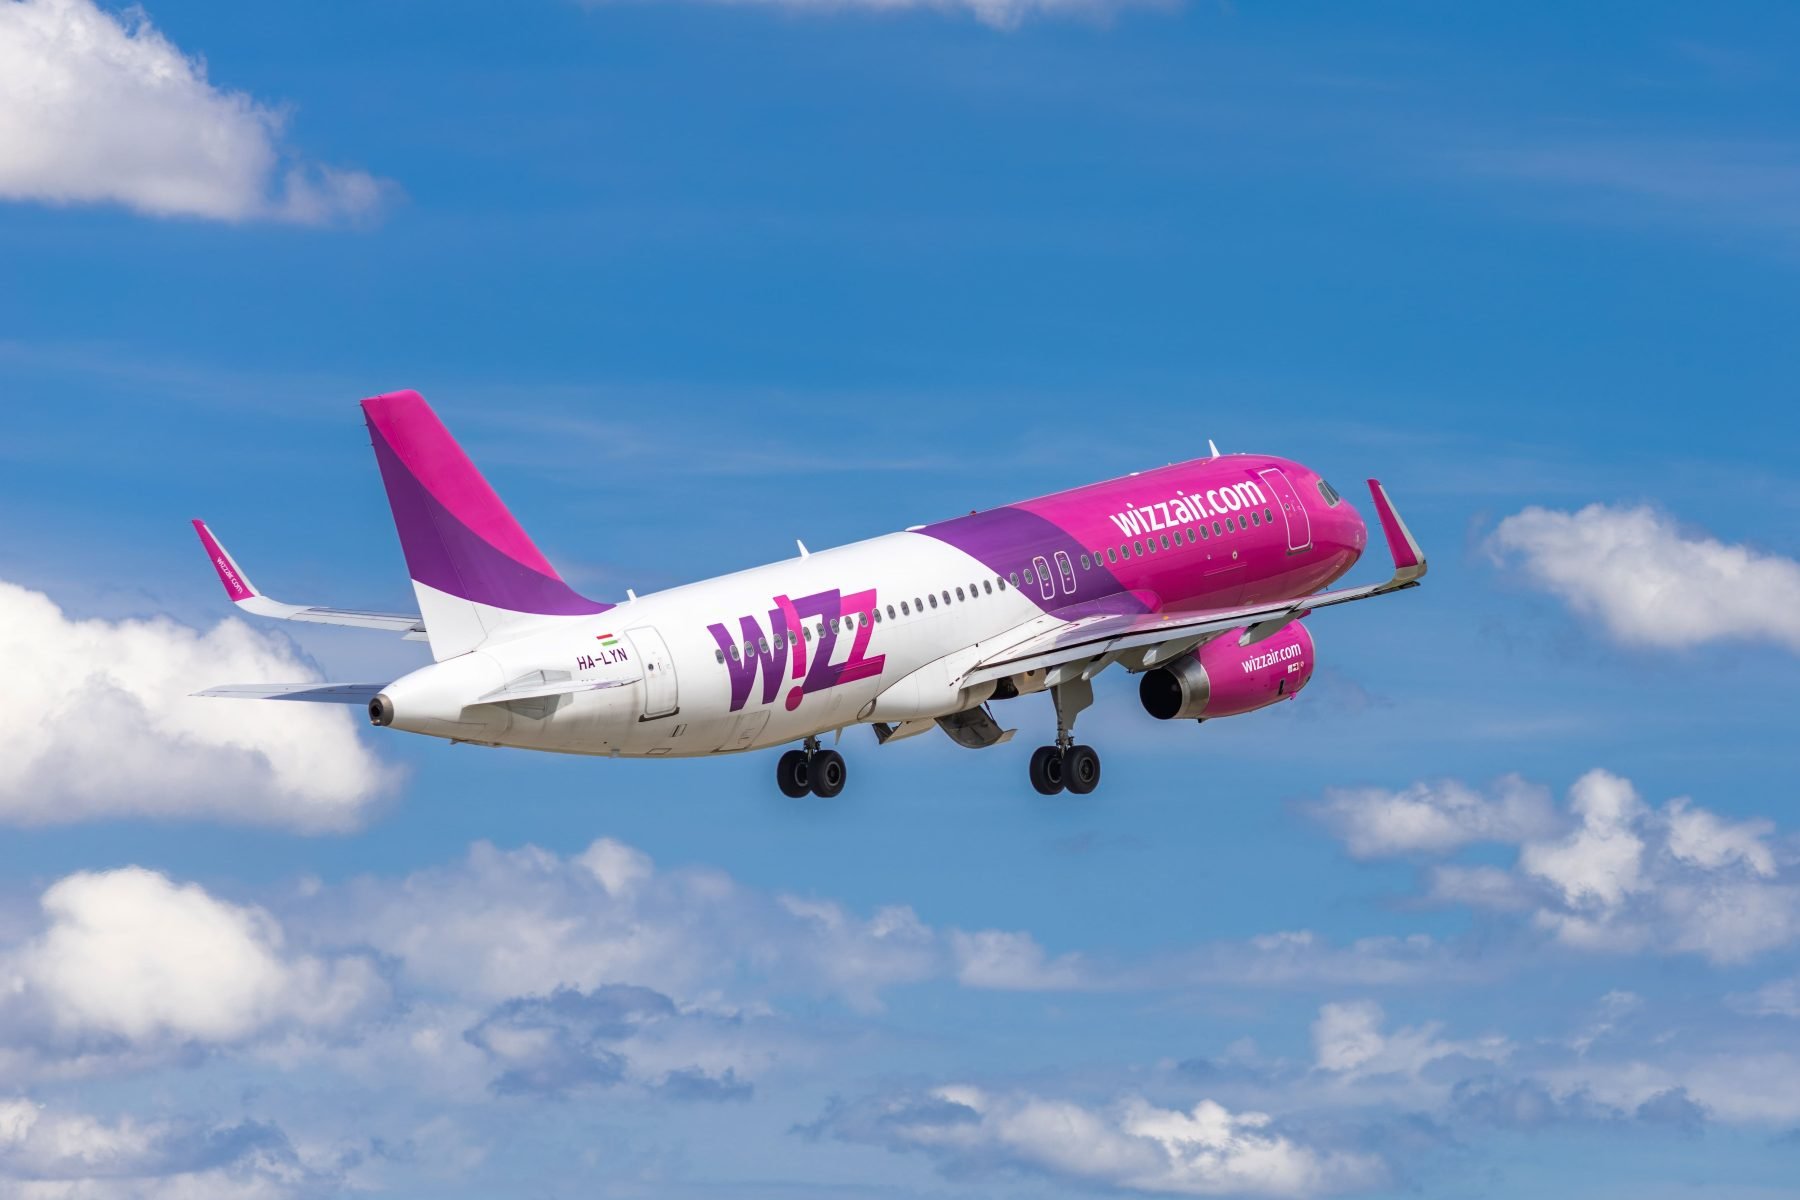  Cursa Iaşi – Tel Aviv, operată de WizzAir, a fost anulată